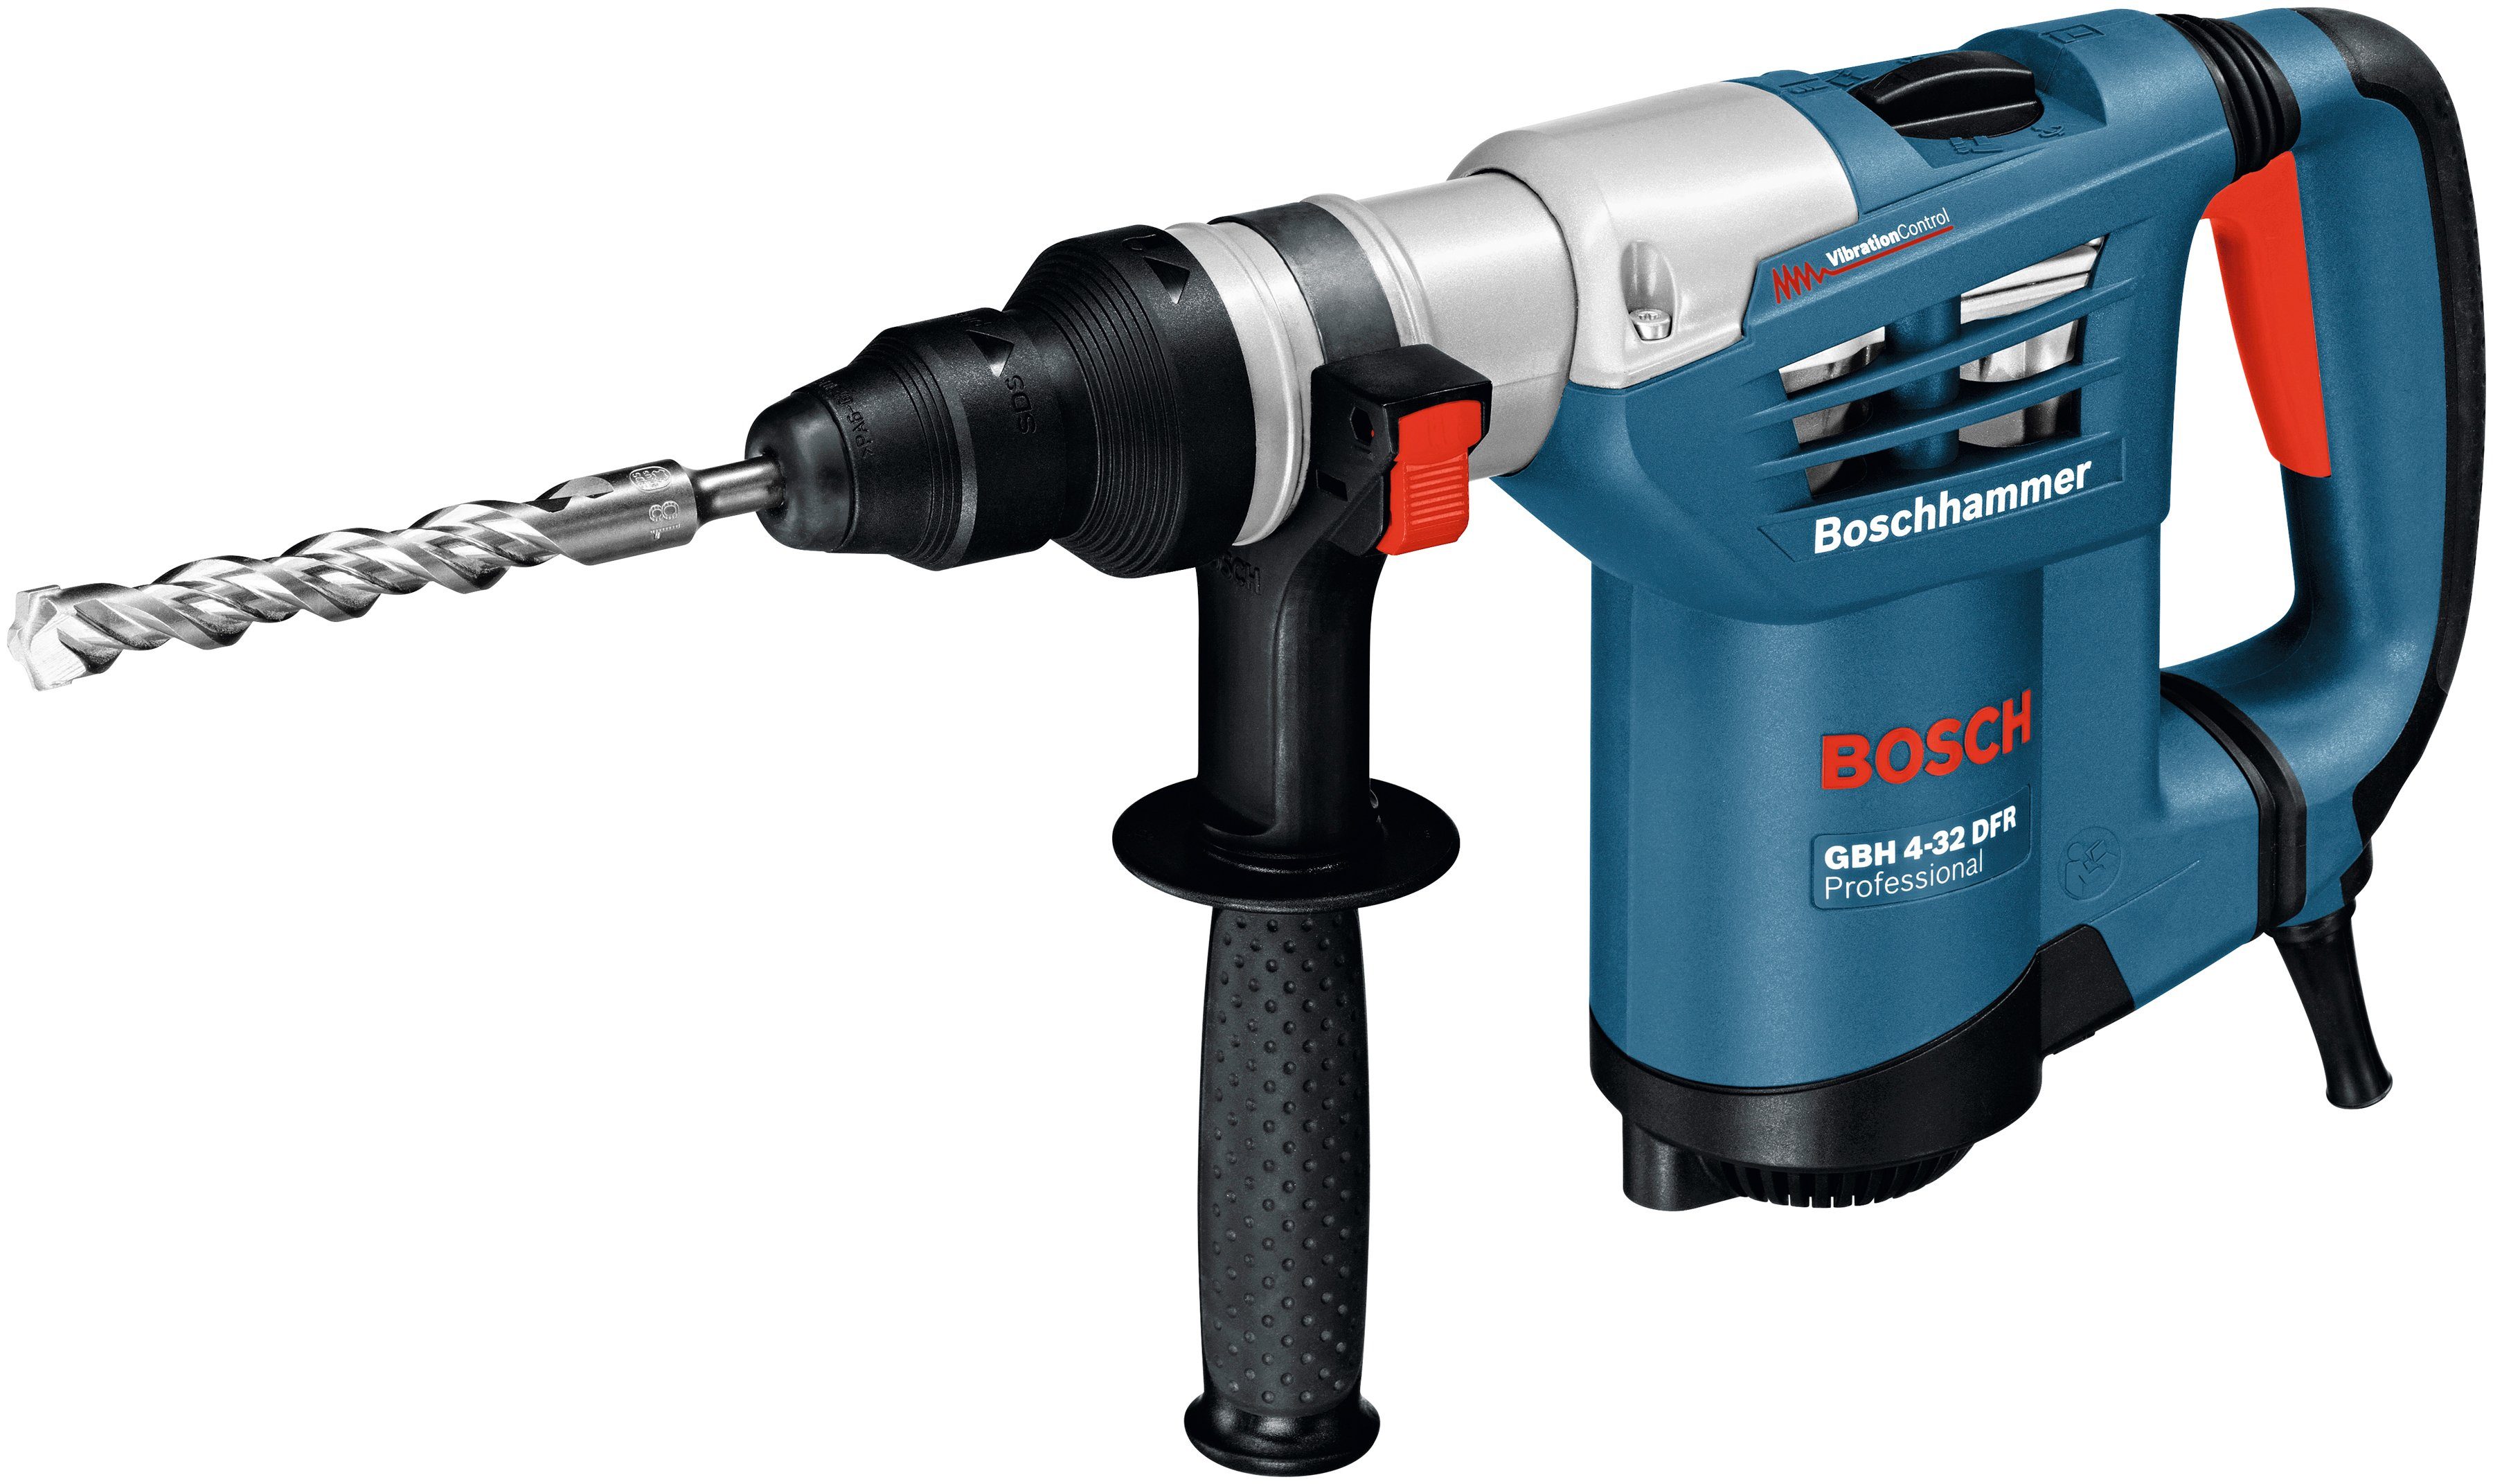 Bosch Professional Bohrhammer Schnellspannbohrfutter, DFR, mit 3600 4-32 Handwerkkoffer GBH U/min, max